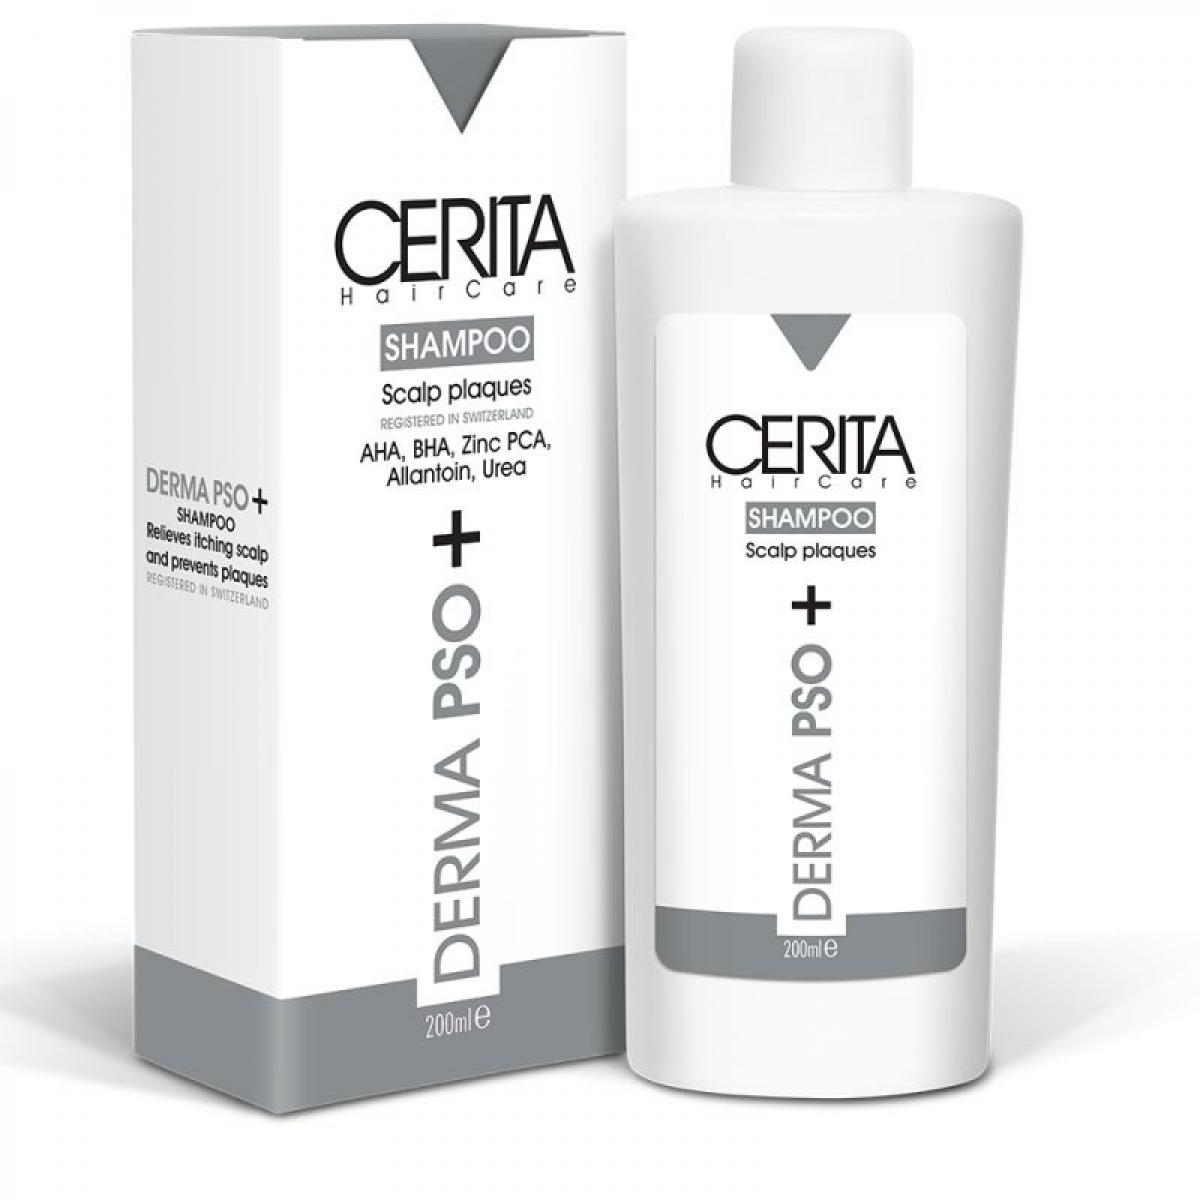 شامپو کنترل کننده پوسته سر مدل Derma PSO  - Cerita Derma PSO Scalp Plaques Shampoo 200ml